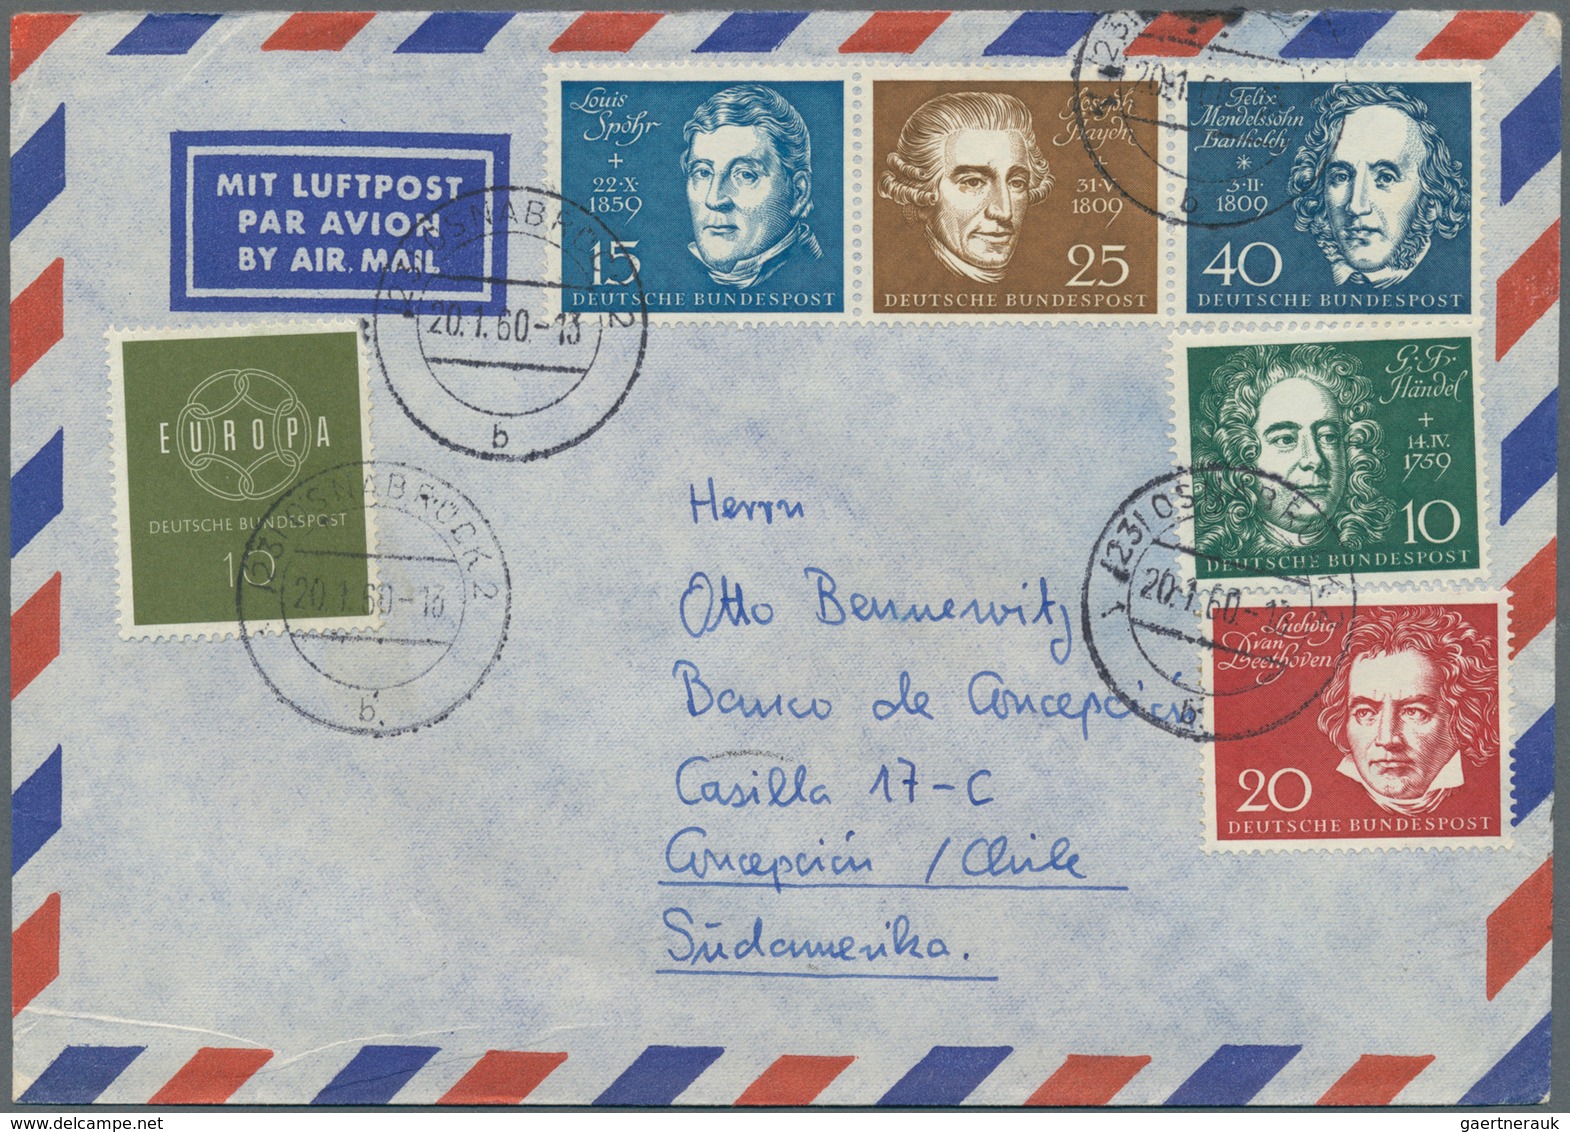 Bundesrepublik Deutschland: 1948/1968, vielseitige Partie von über 70 (meist Luftpost-) Briefen aus